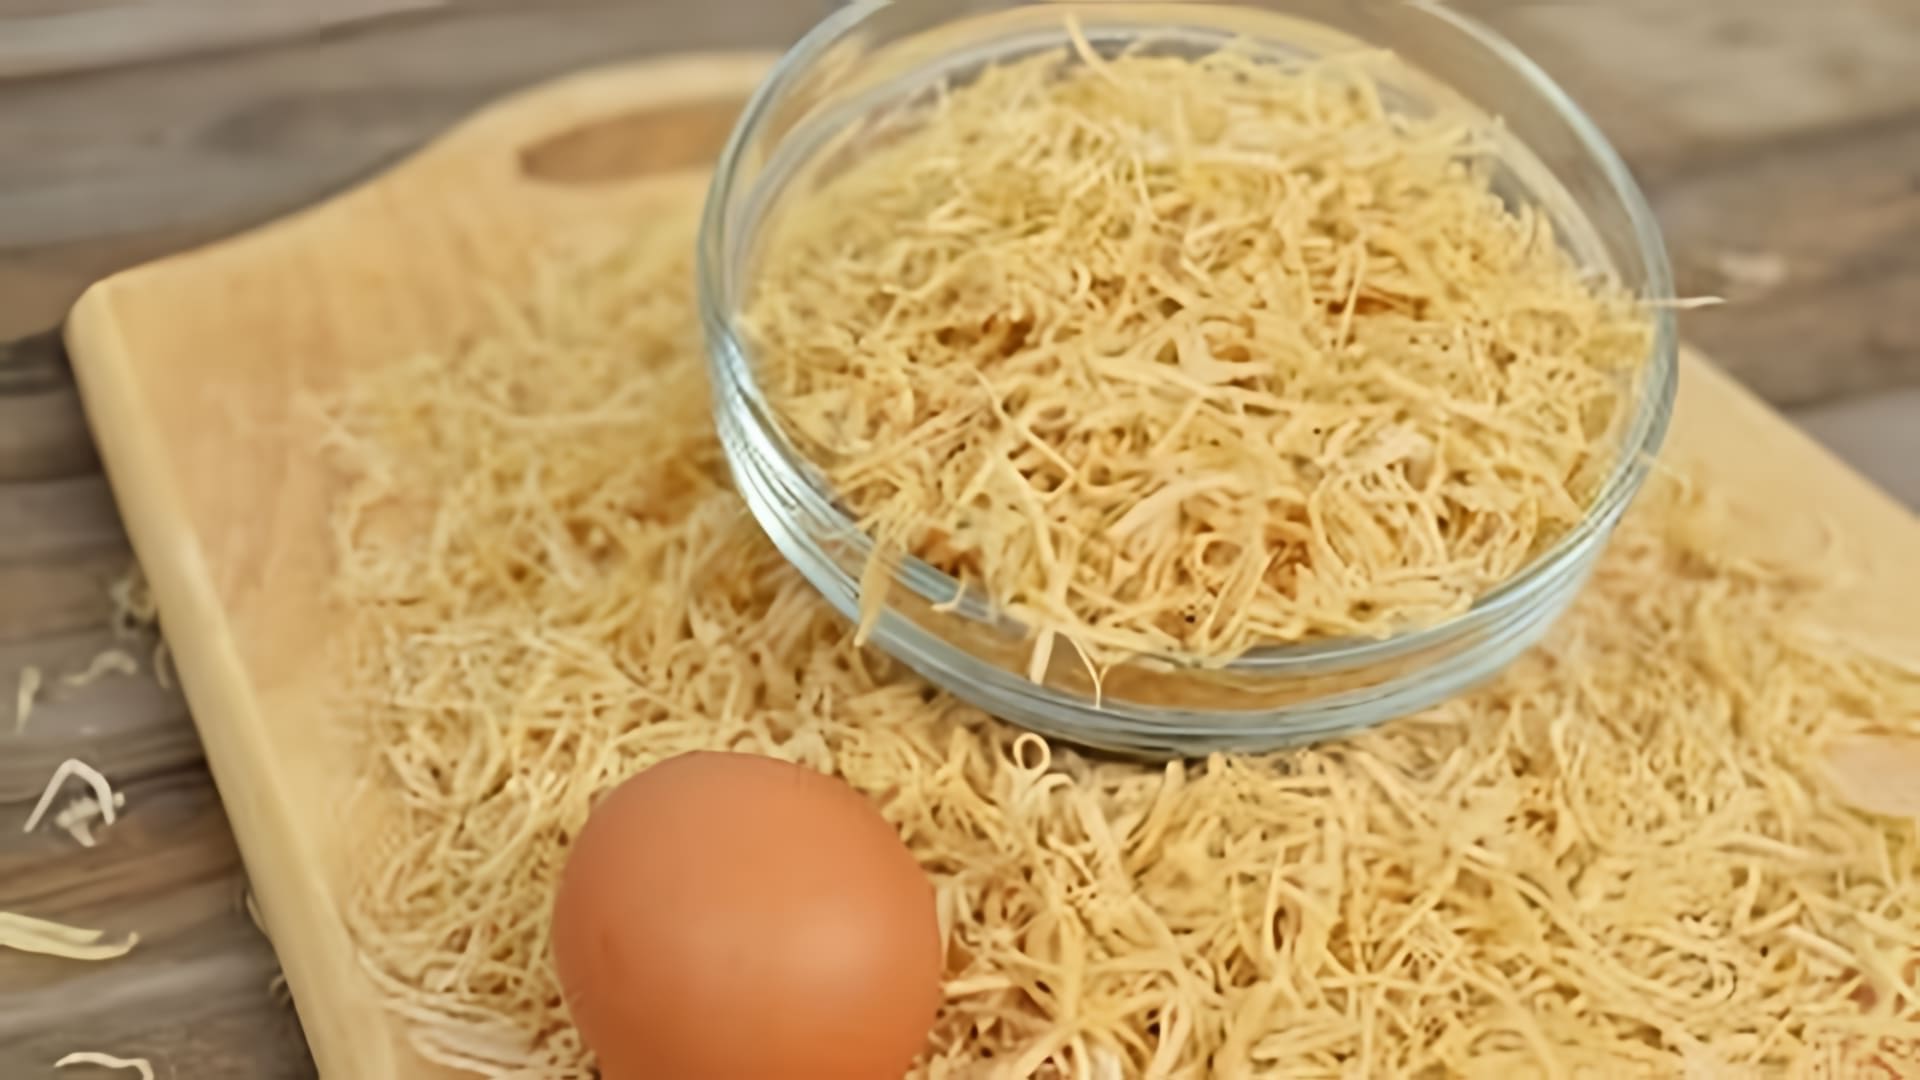 В этом видео демонстрируется процесс приготовления домашней яичной лапши